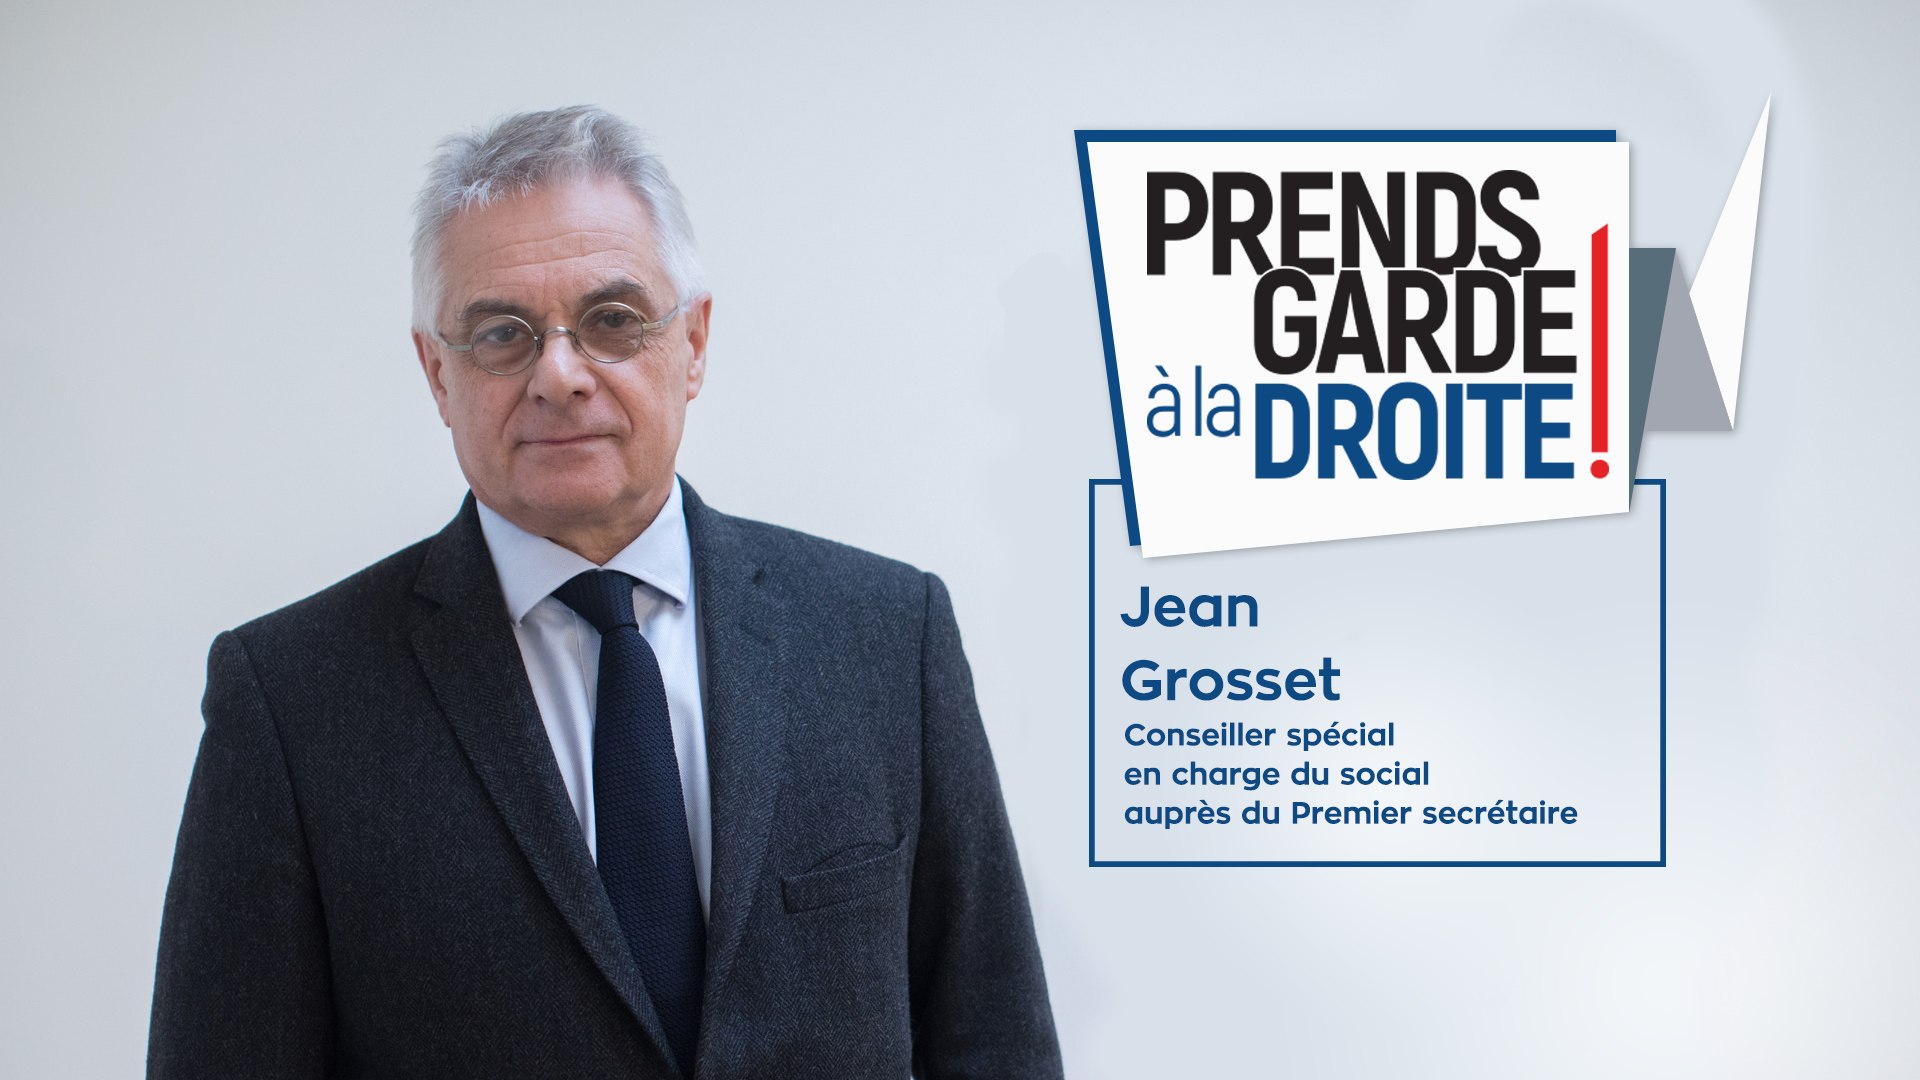 PrendsGarde à la droite - Jean Grosset dévoile le programme de la droite  pour casser le modèle social français - Vidéo Dailymotion